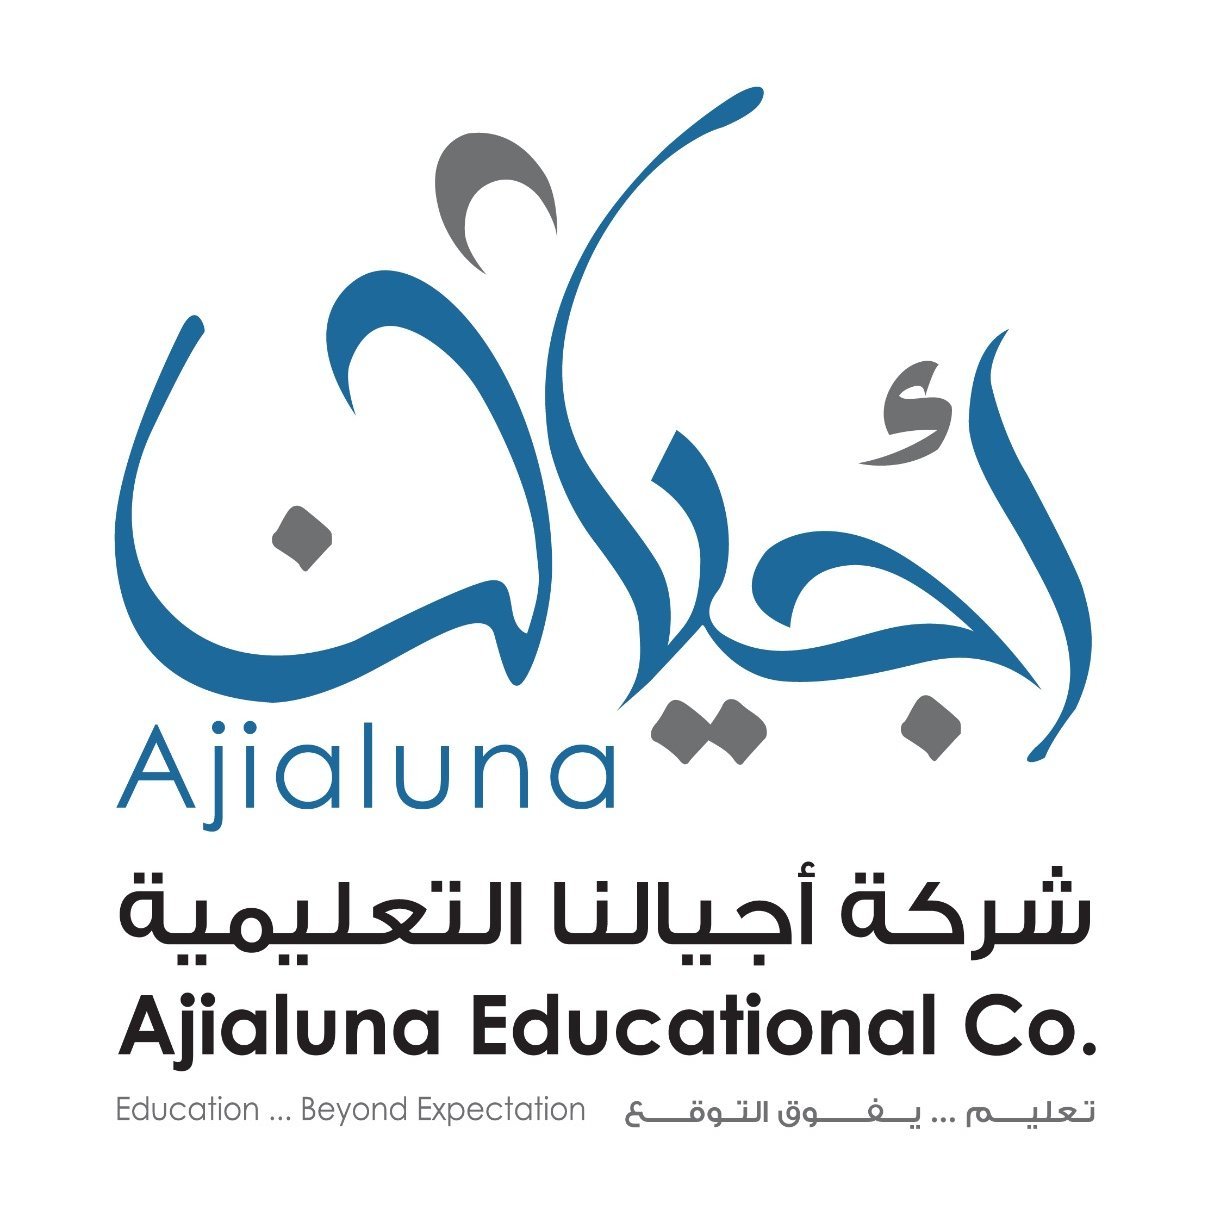 شركة أجيالنا التعليمية تهتم بصناعة التعليم الاهلي والدولي من رياض الأطفال إلى المرحلة الثانوية في الرياض وجدة والمنطقة الشرقية